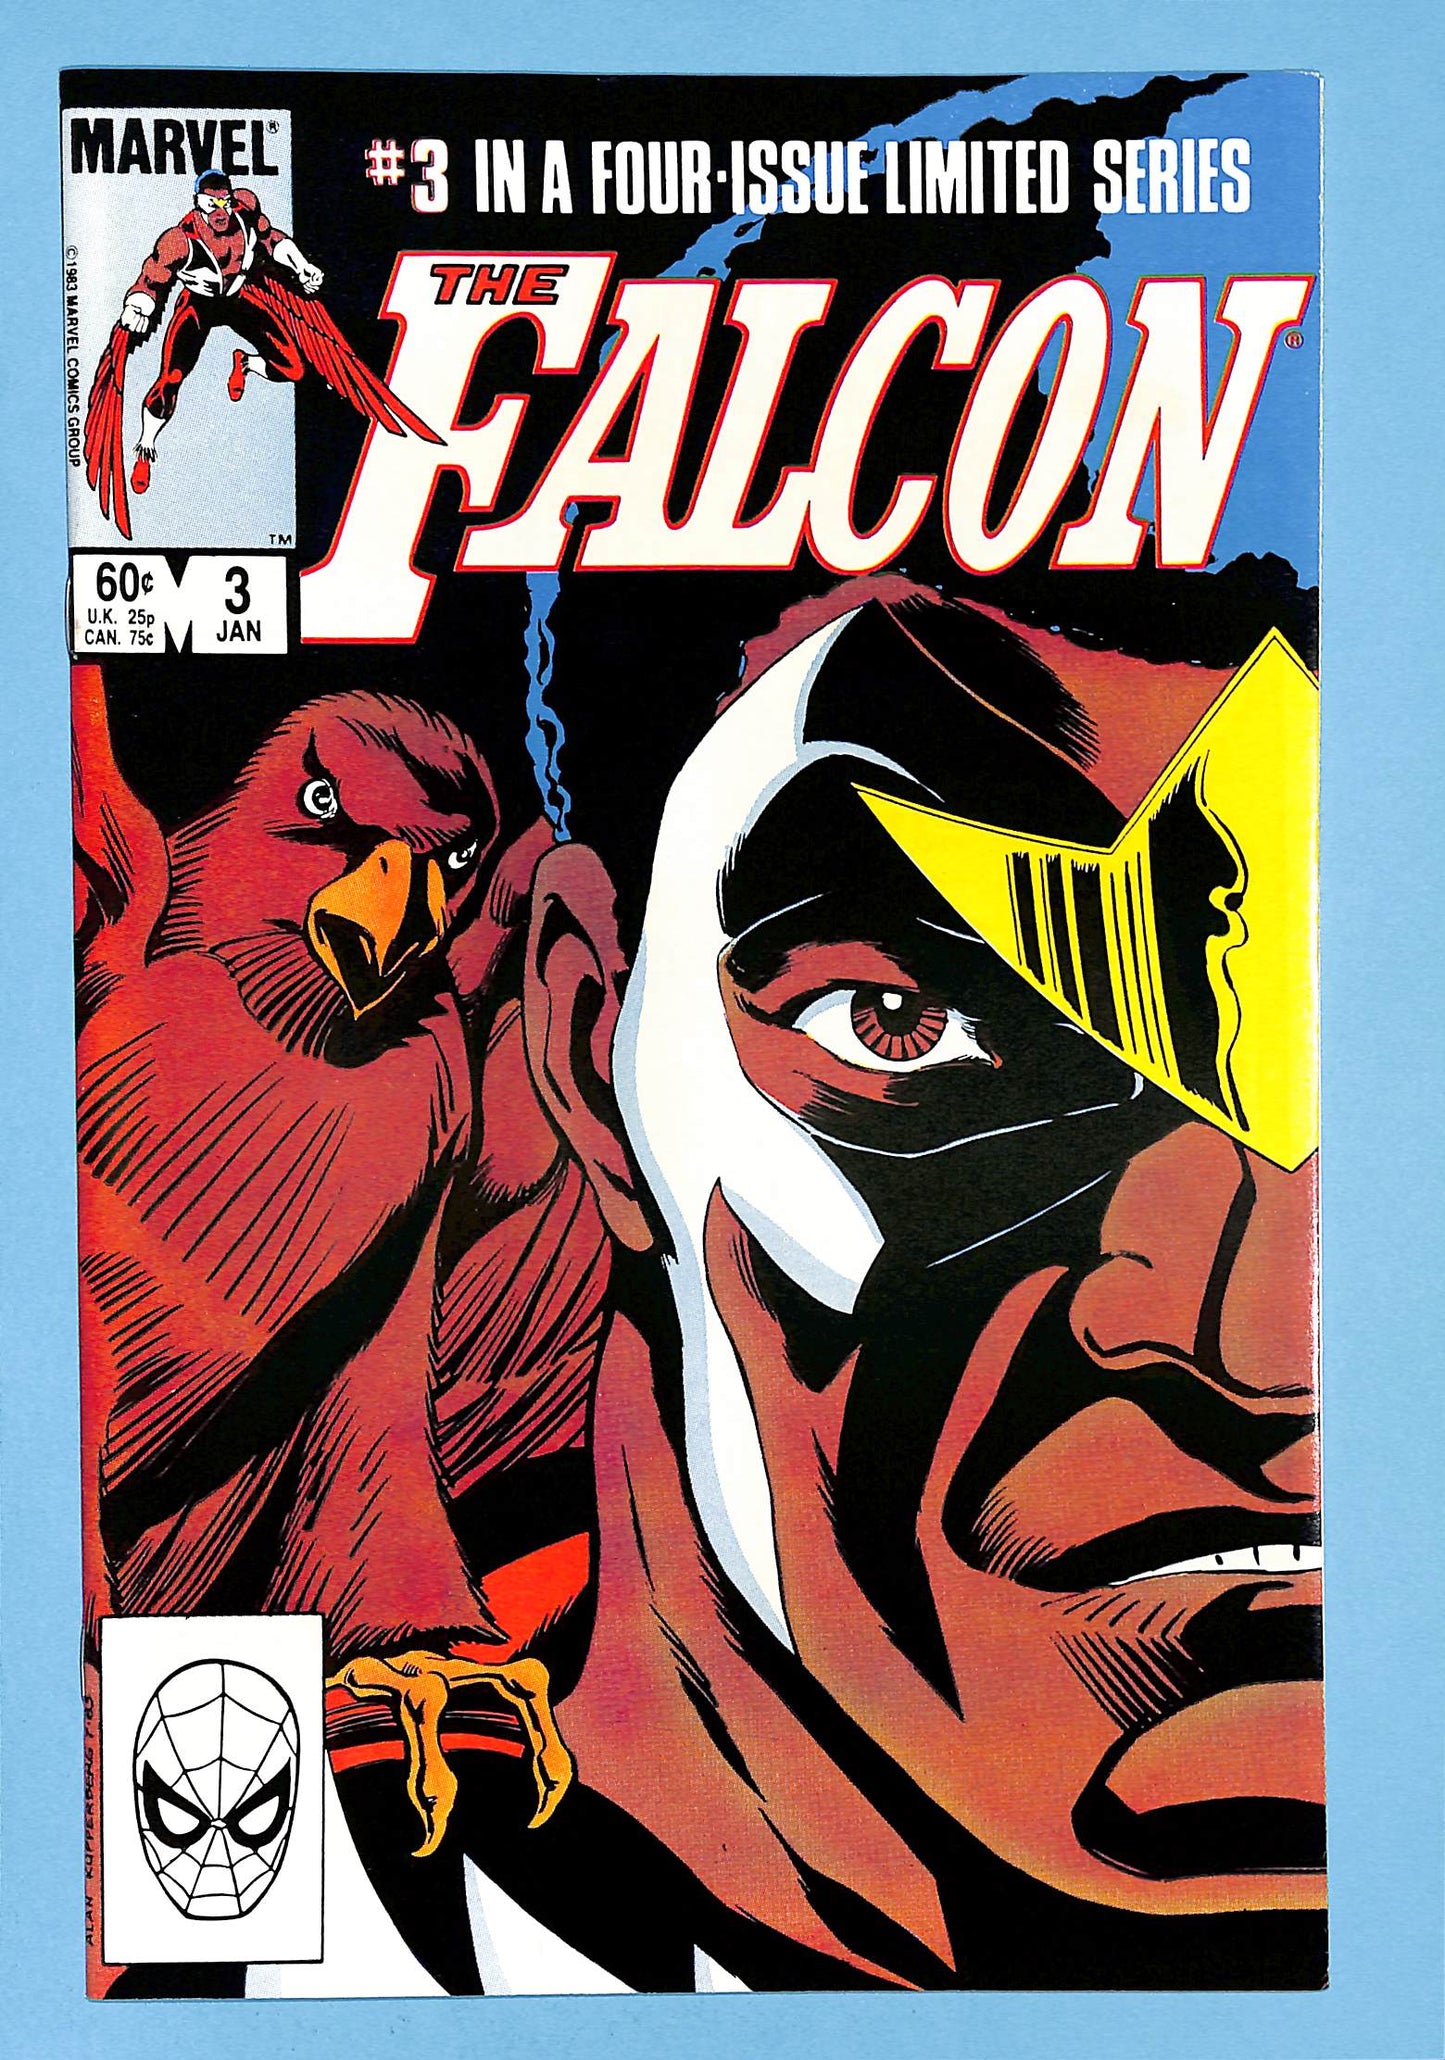 Falcon #1-4 First Solo Series